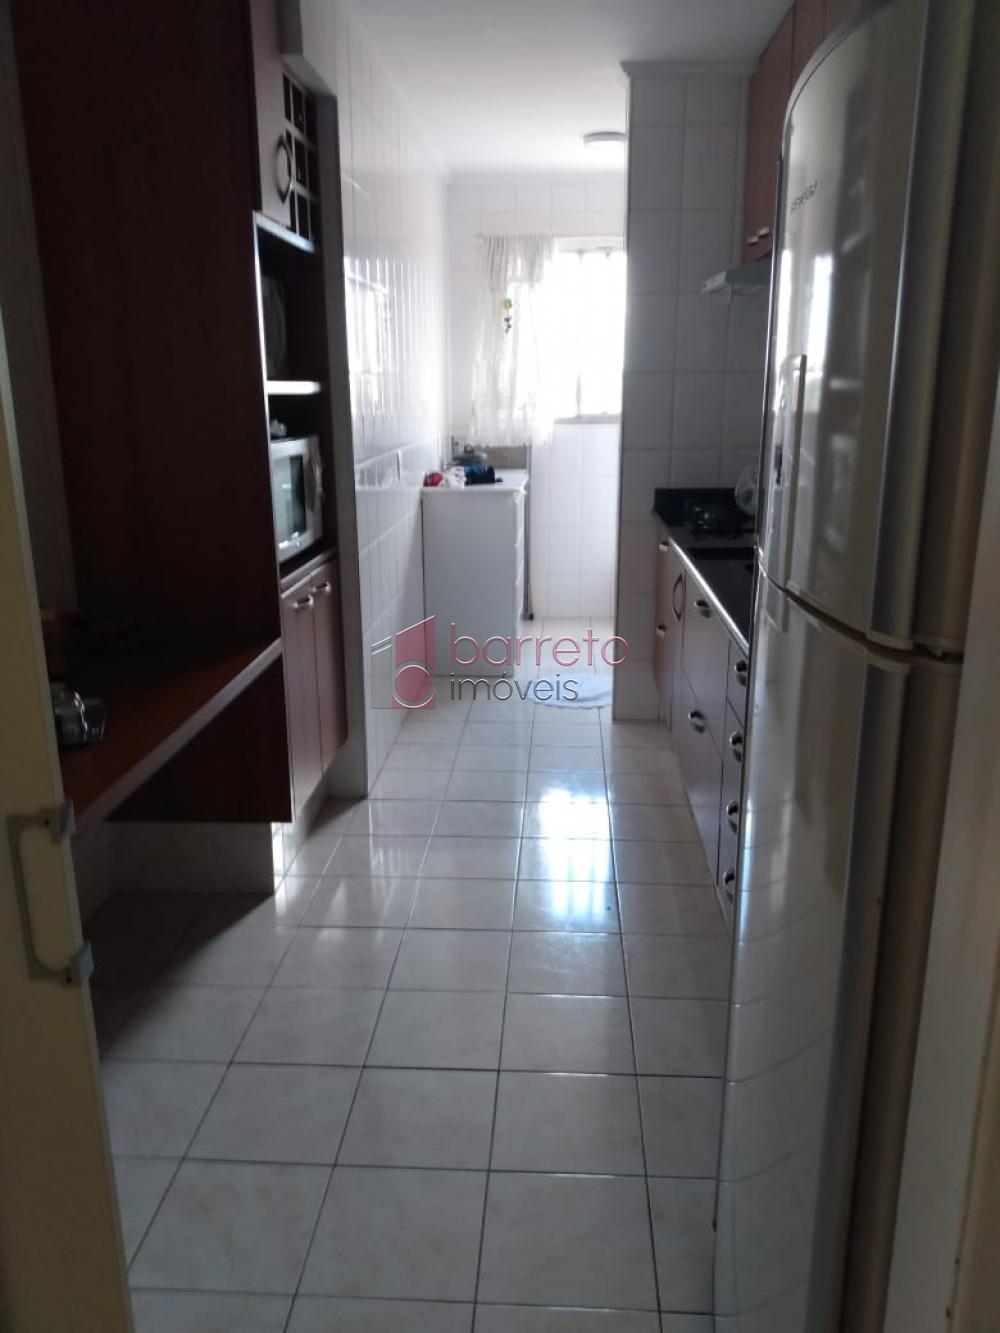 Comprar Apartamento / Padrão em Jundiaí R$ 390.000,00 - Foto 7